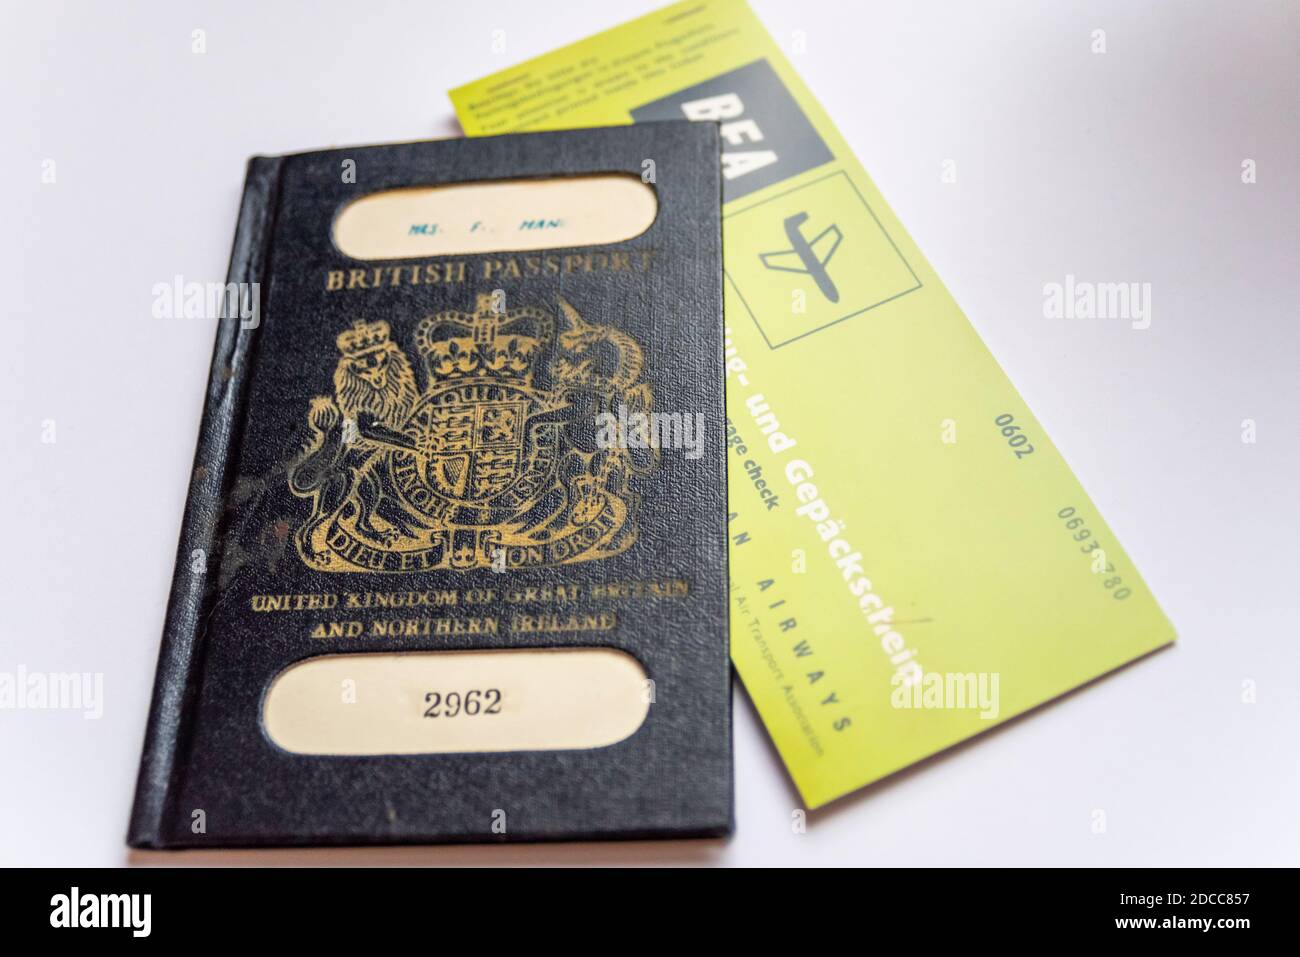 Antiguo pasaporte británico azul oscuro o negro con un viejo billete de avión British European Airways, BEA, (copia). Amalgamated en British Airways Foto de stock